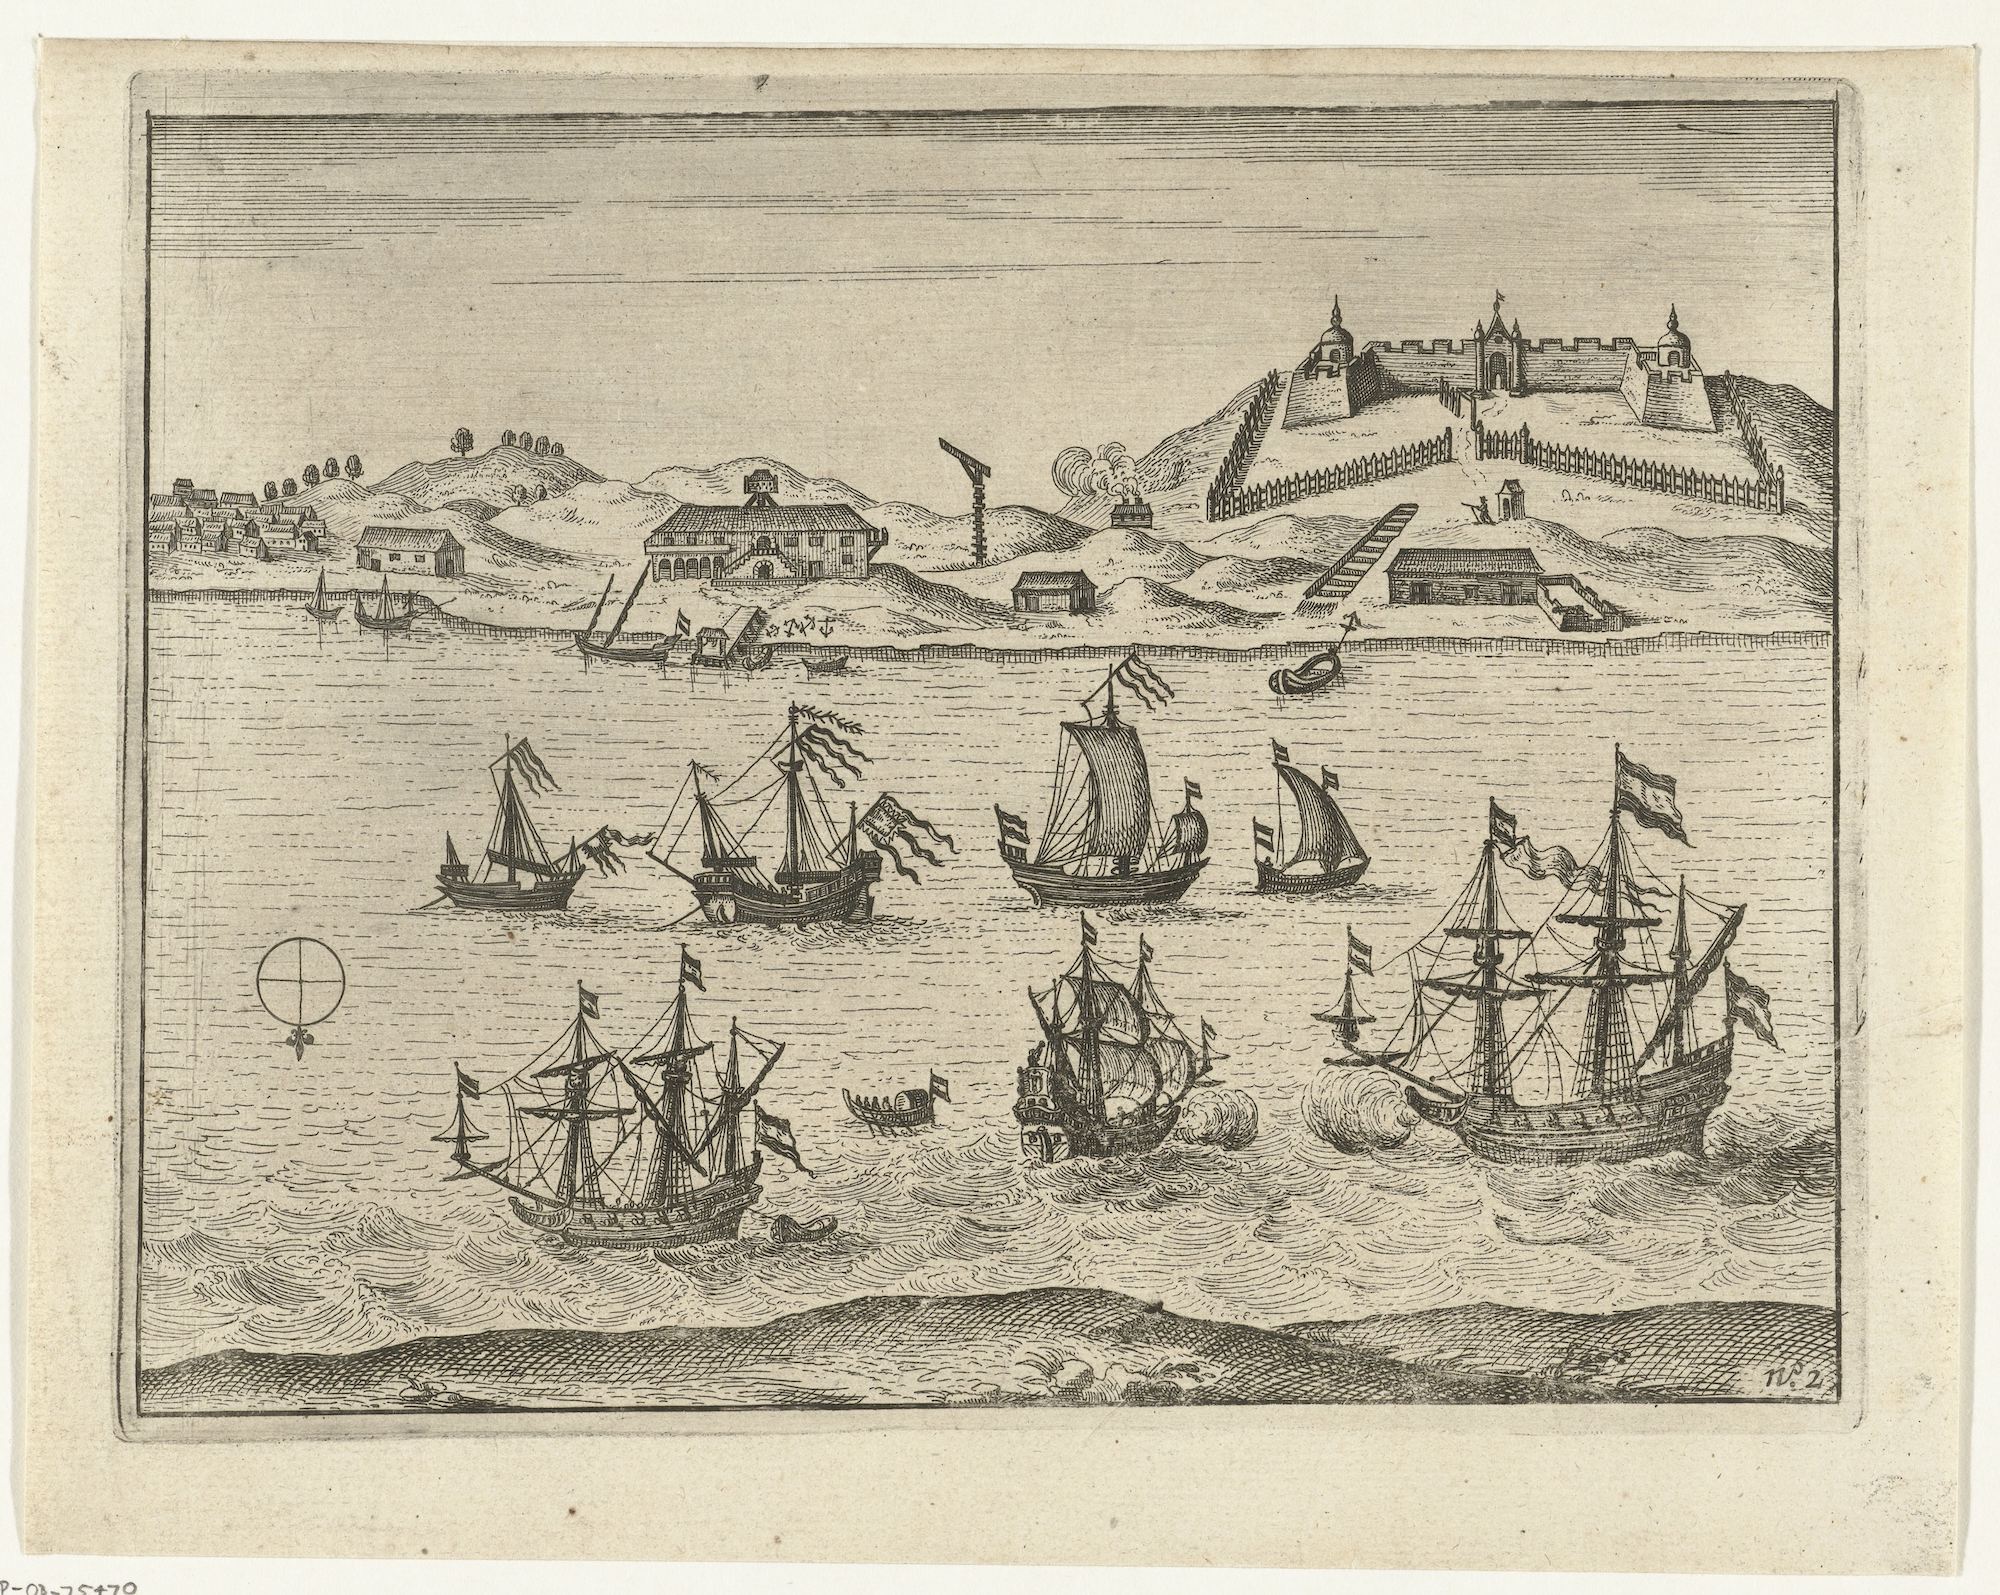 View of Fort Zeelandia